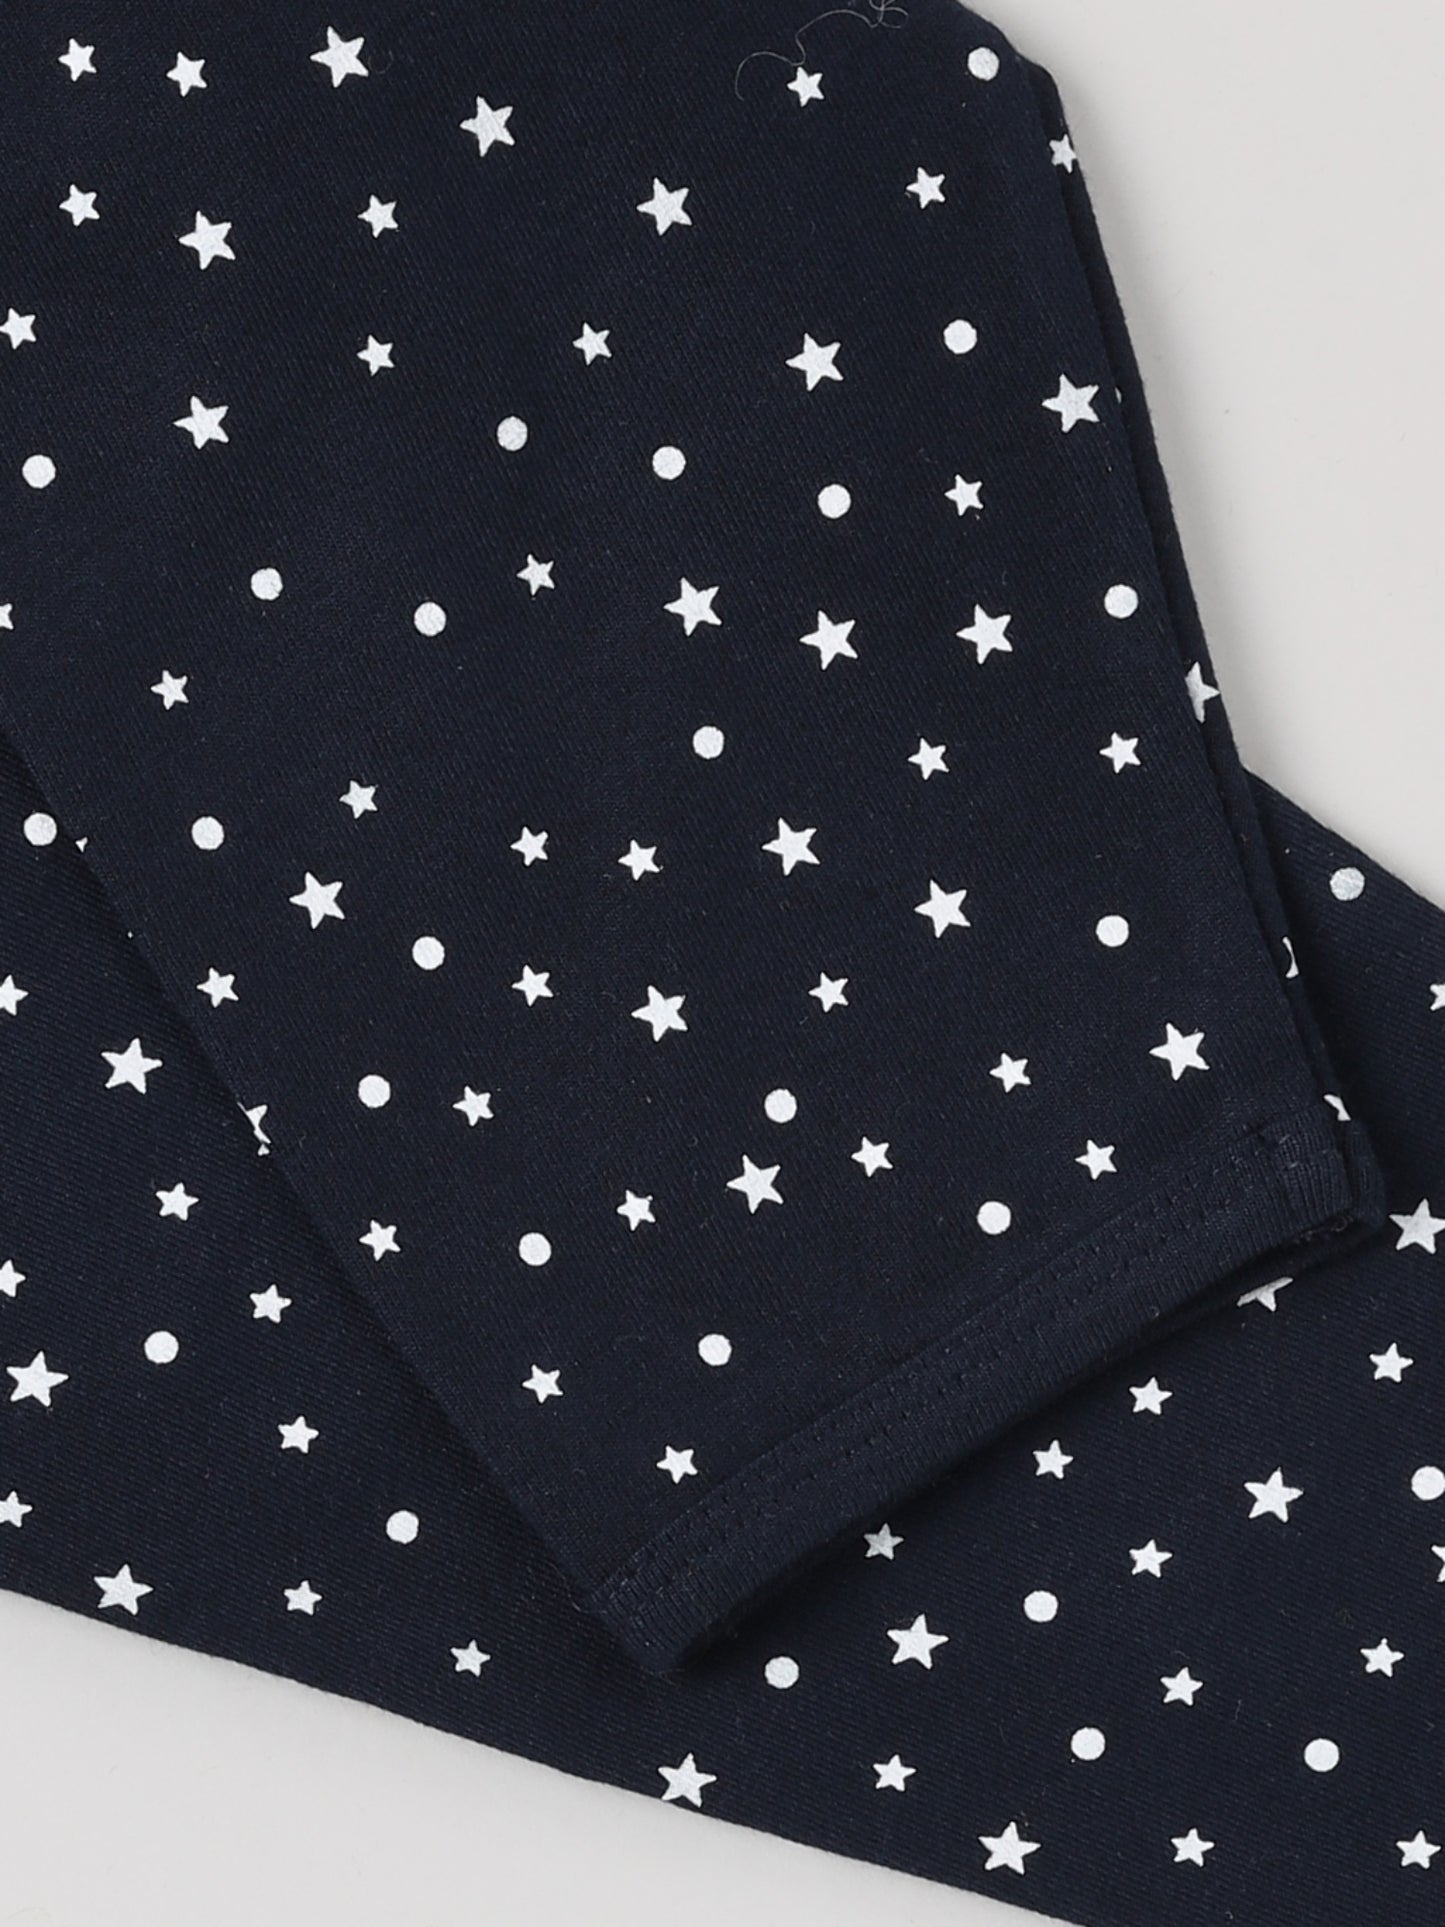 Space Theme Blue Full Sleeve Cotton Daywear/Nightwear Set